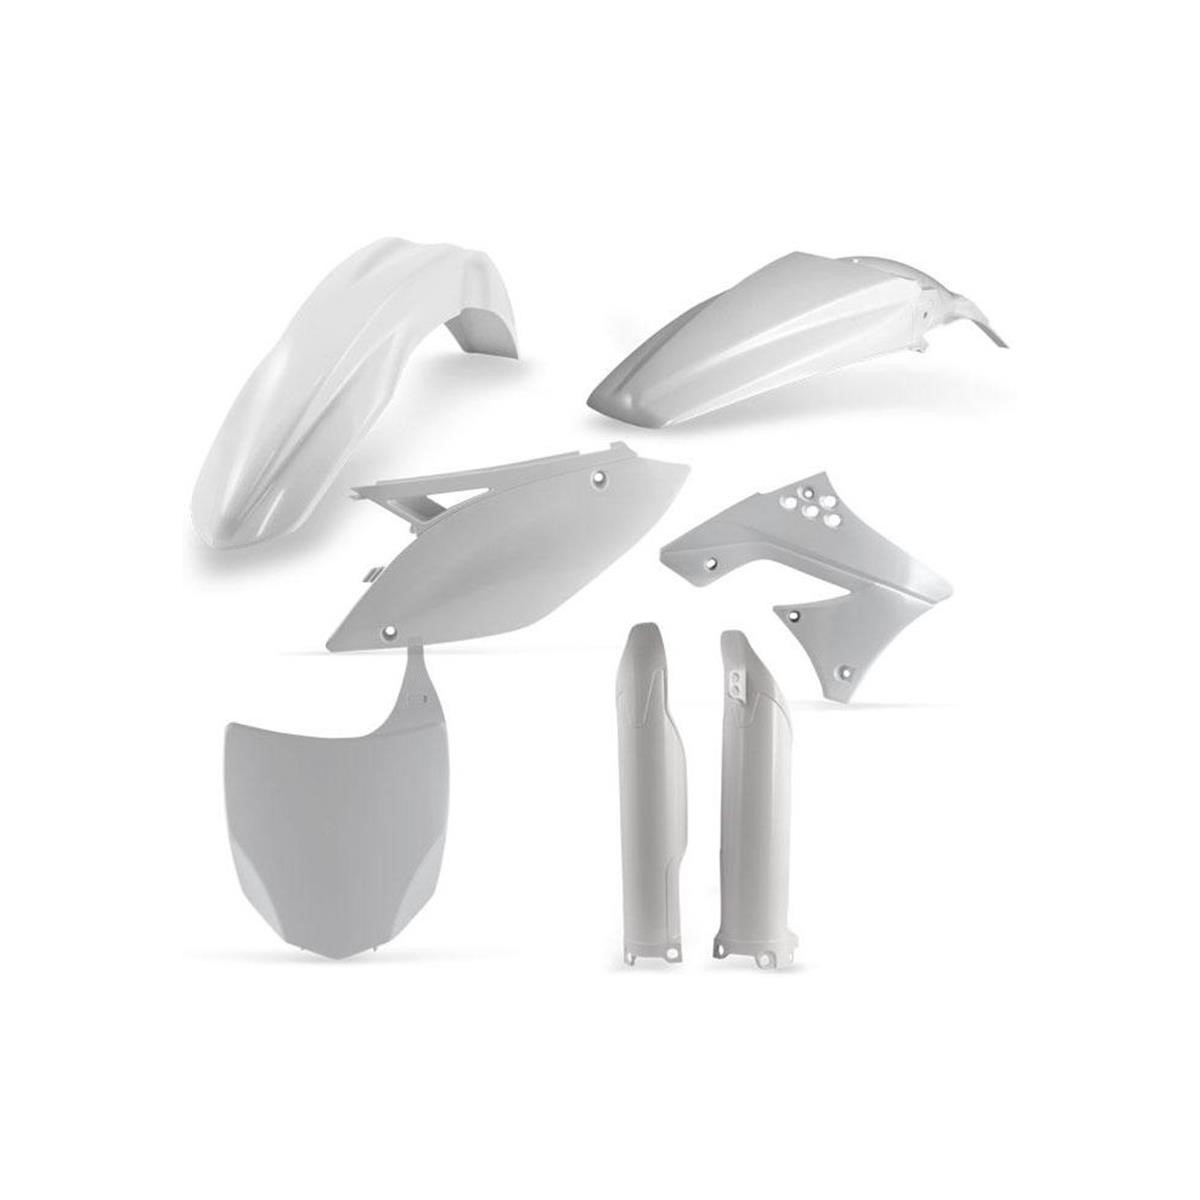 Acerbis Plastic Kit Full-Kit Kawasaki KXF 450 13-15, White